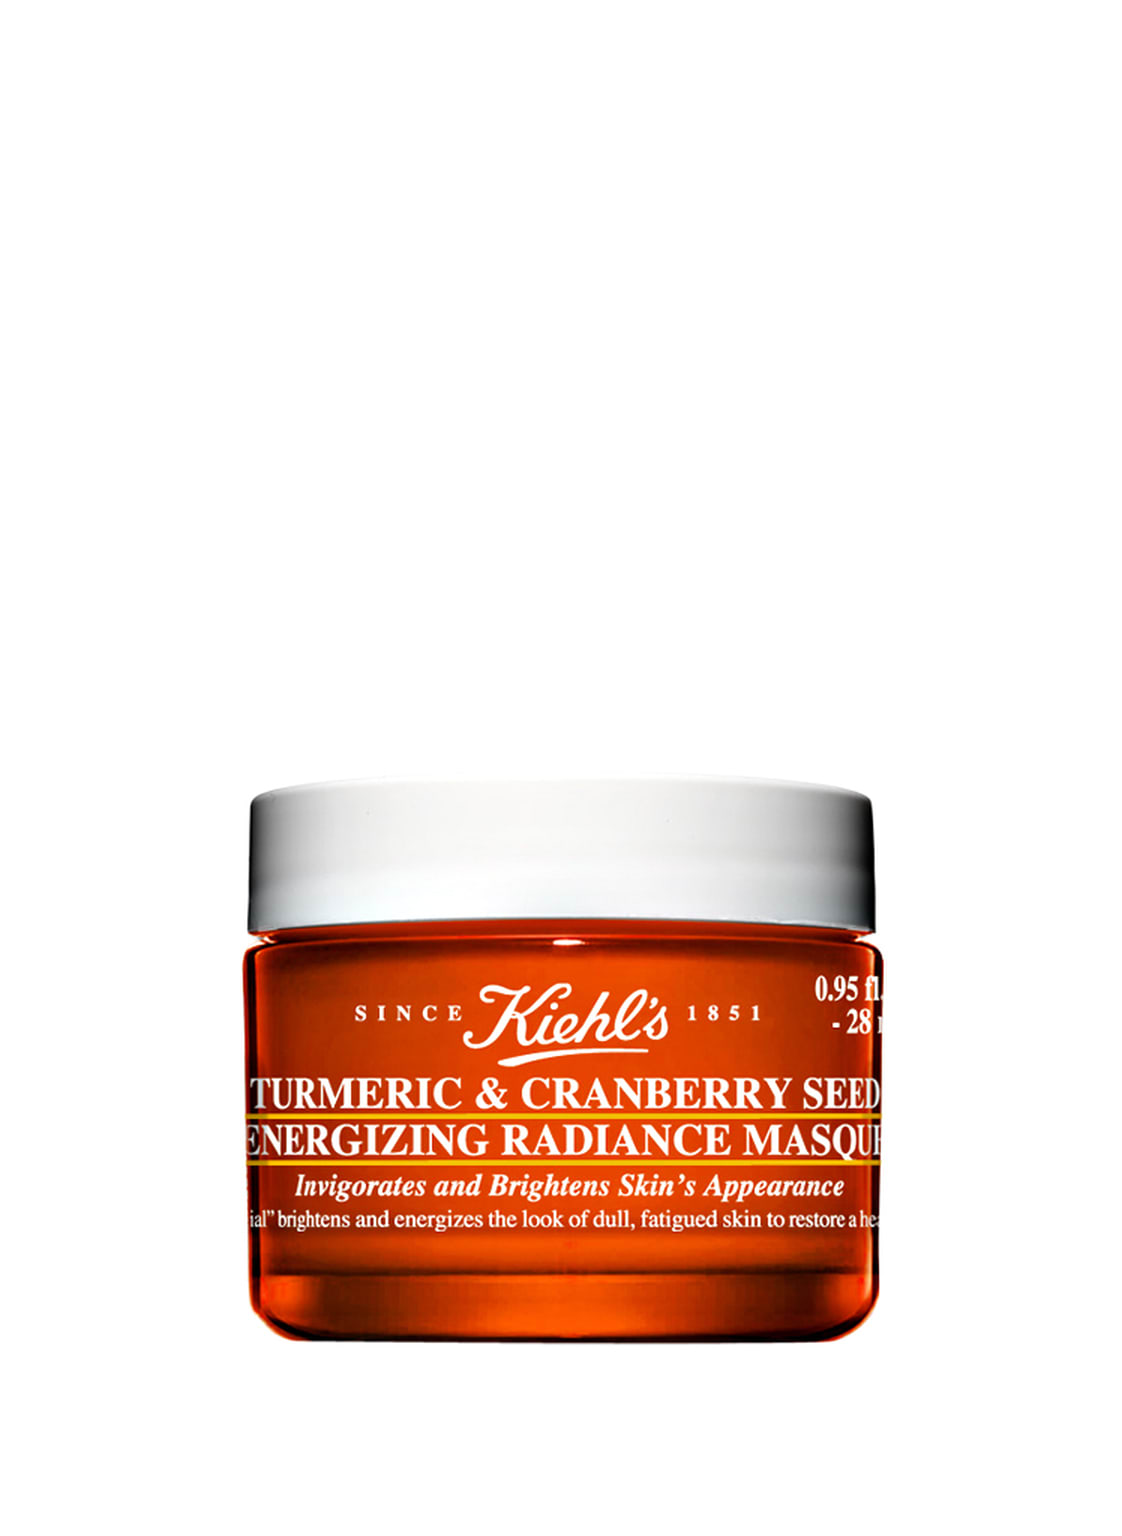 Kiehl's Tumeric & Cranberry Seed Energizing Radiance Masque Gesichtsmaske 28 ml von Kiehls